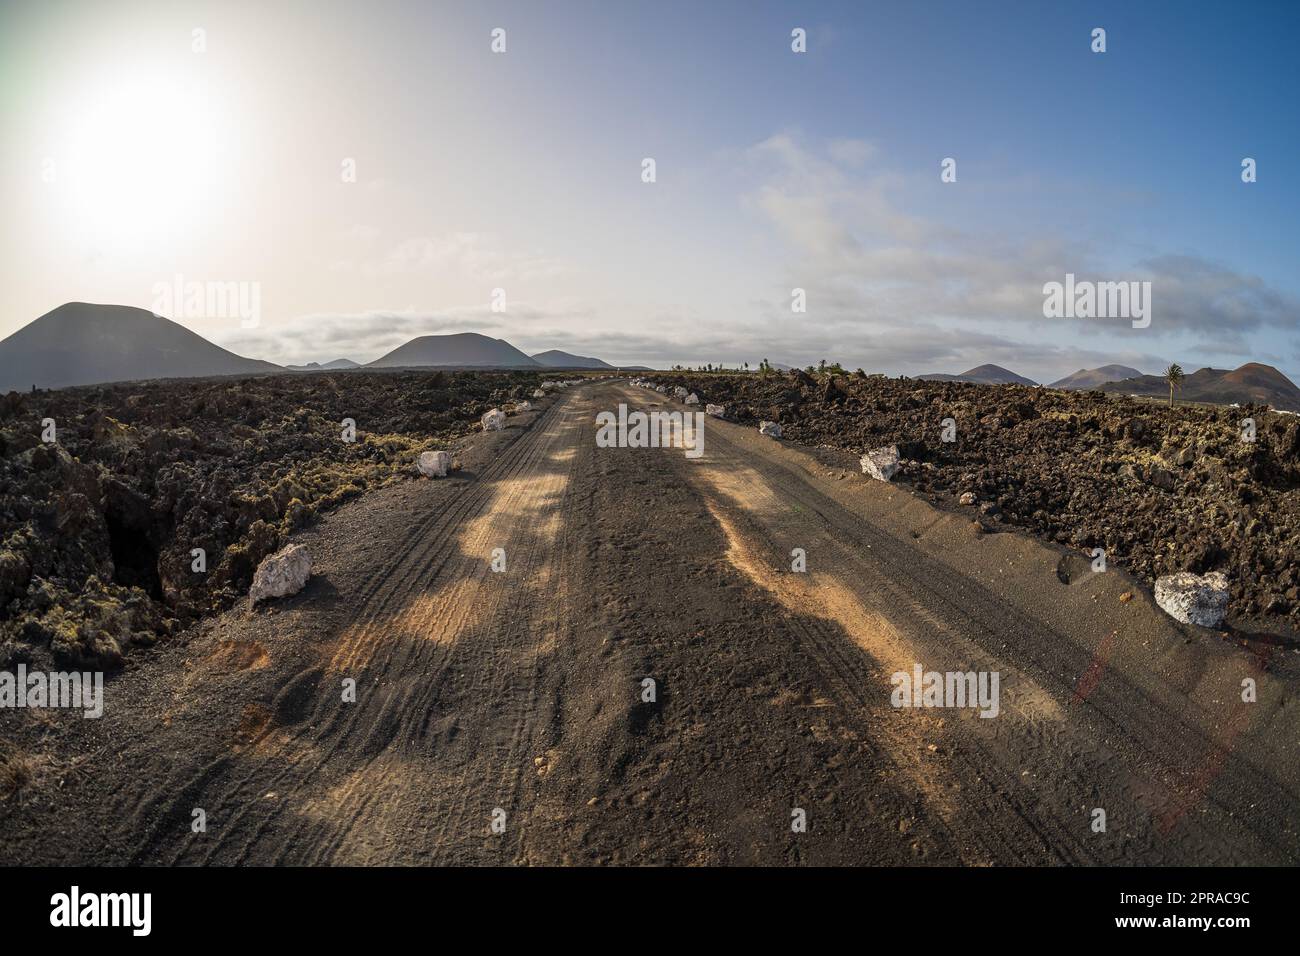 Typische vulkanische Landschaft. Straße in die Ferne. Lanzarote, Kanarische Inseln. Spanien. Stockfoto